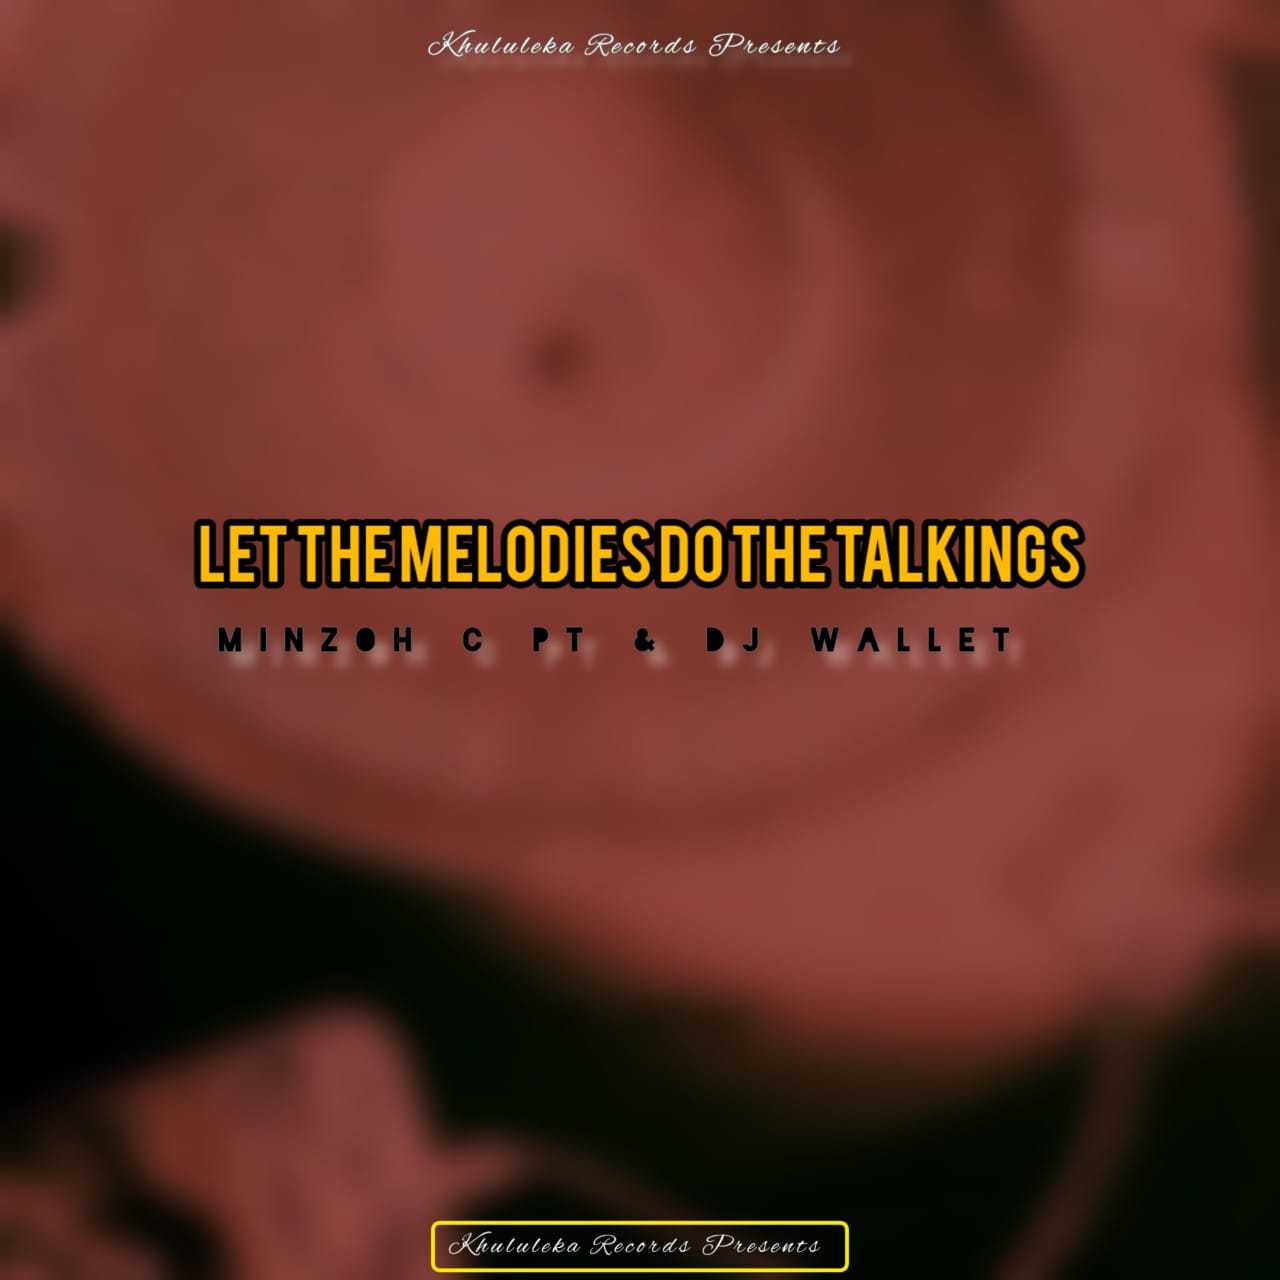 Let The Melodies Do The Talkings - Minzoh C Pt x Dj Wallet